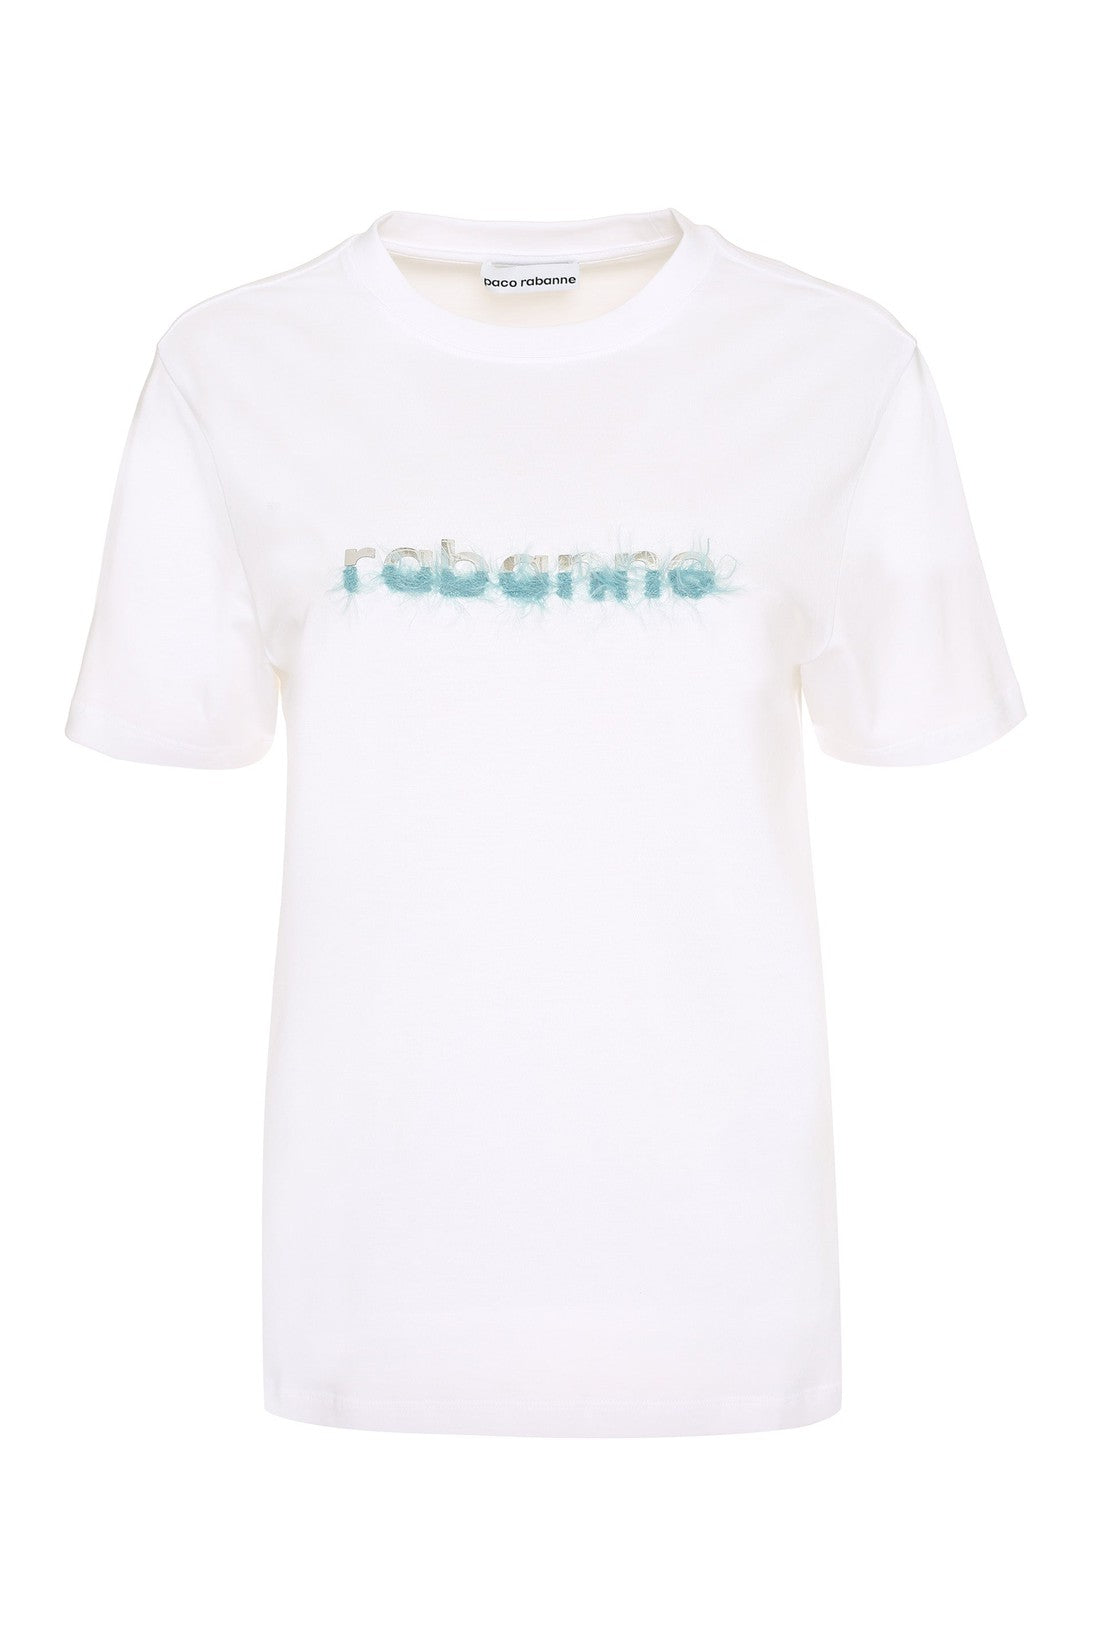 Rabanne-OUTLET-SALE-Cotton crew-neck T-shirt-ARCHIVIST